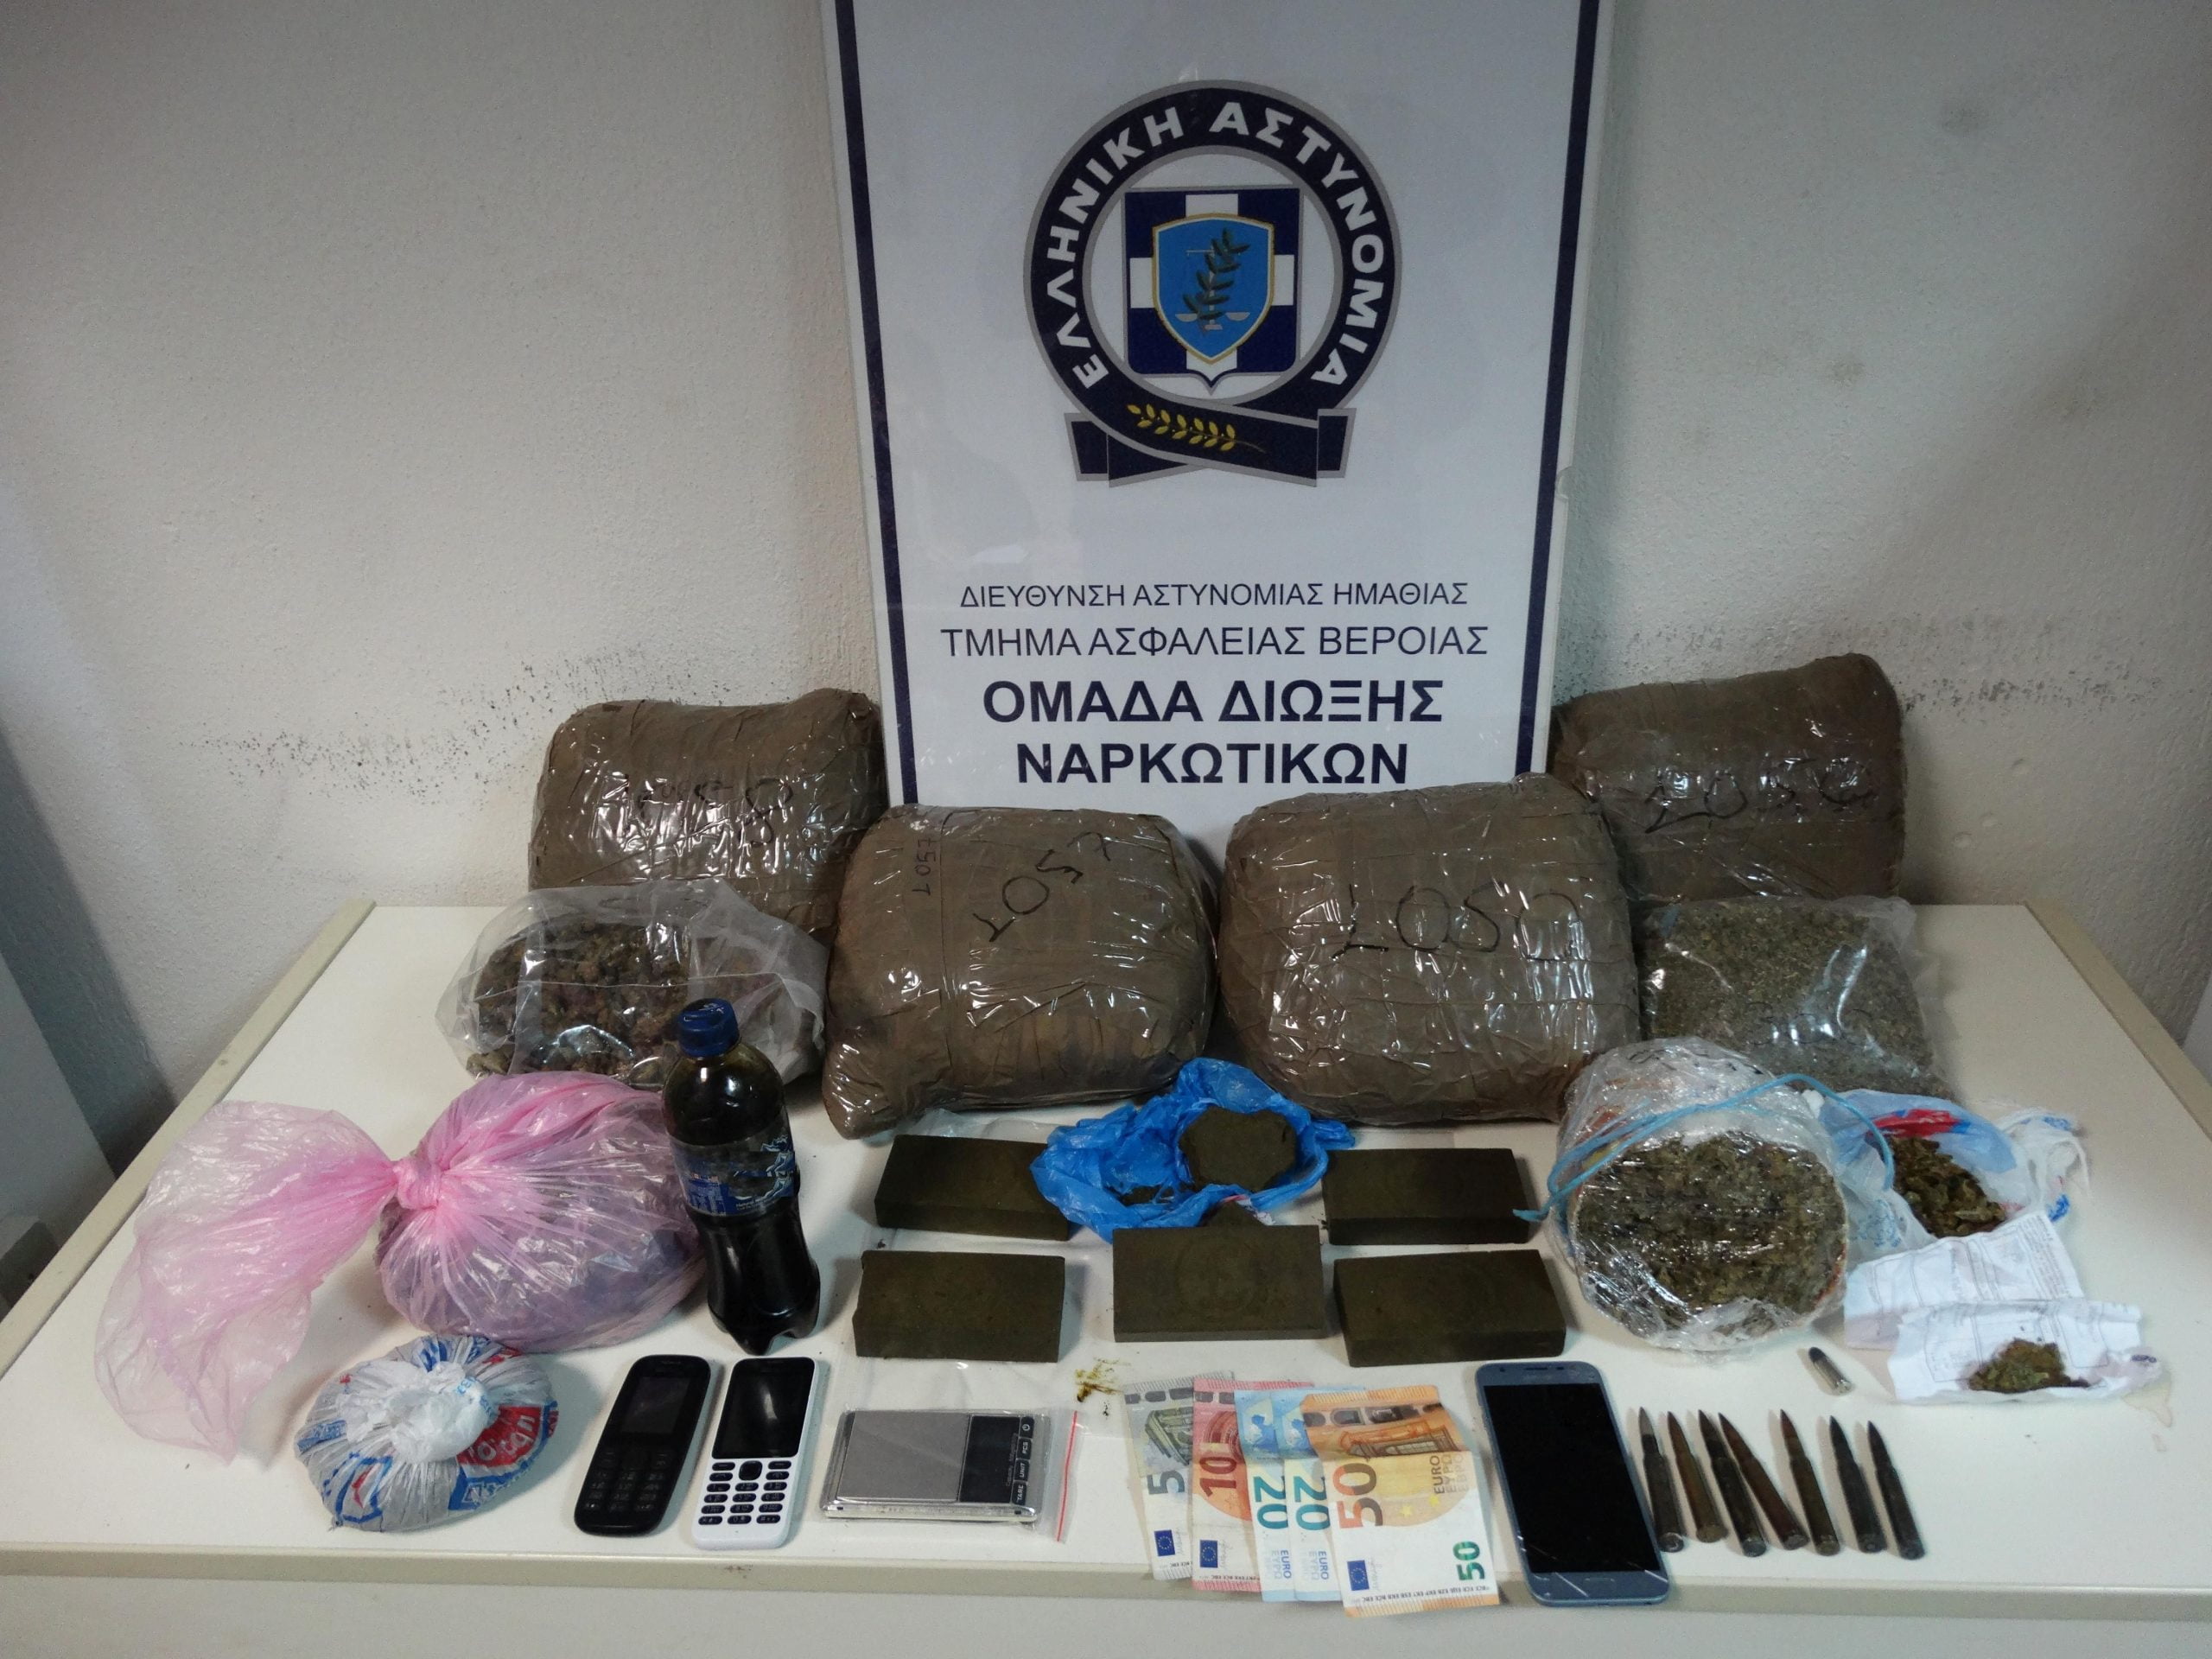 Διαμέρισμα στη Θεσσαλονίκη μετατράπηκε σε… αποθήκη ναρκωτικών